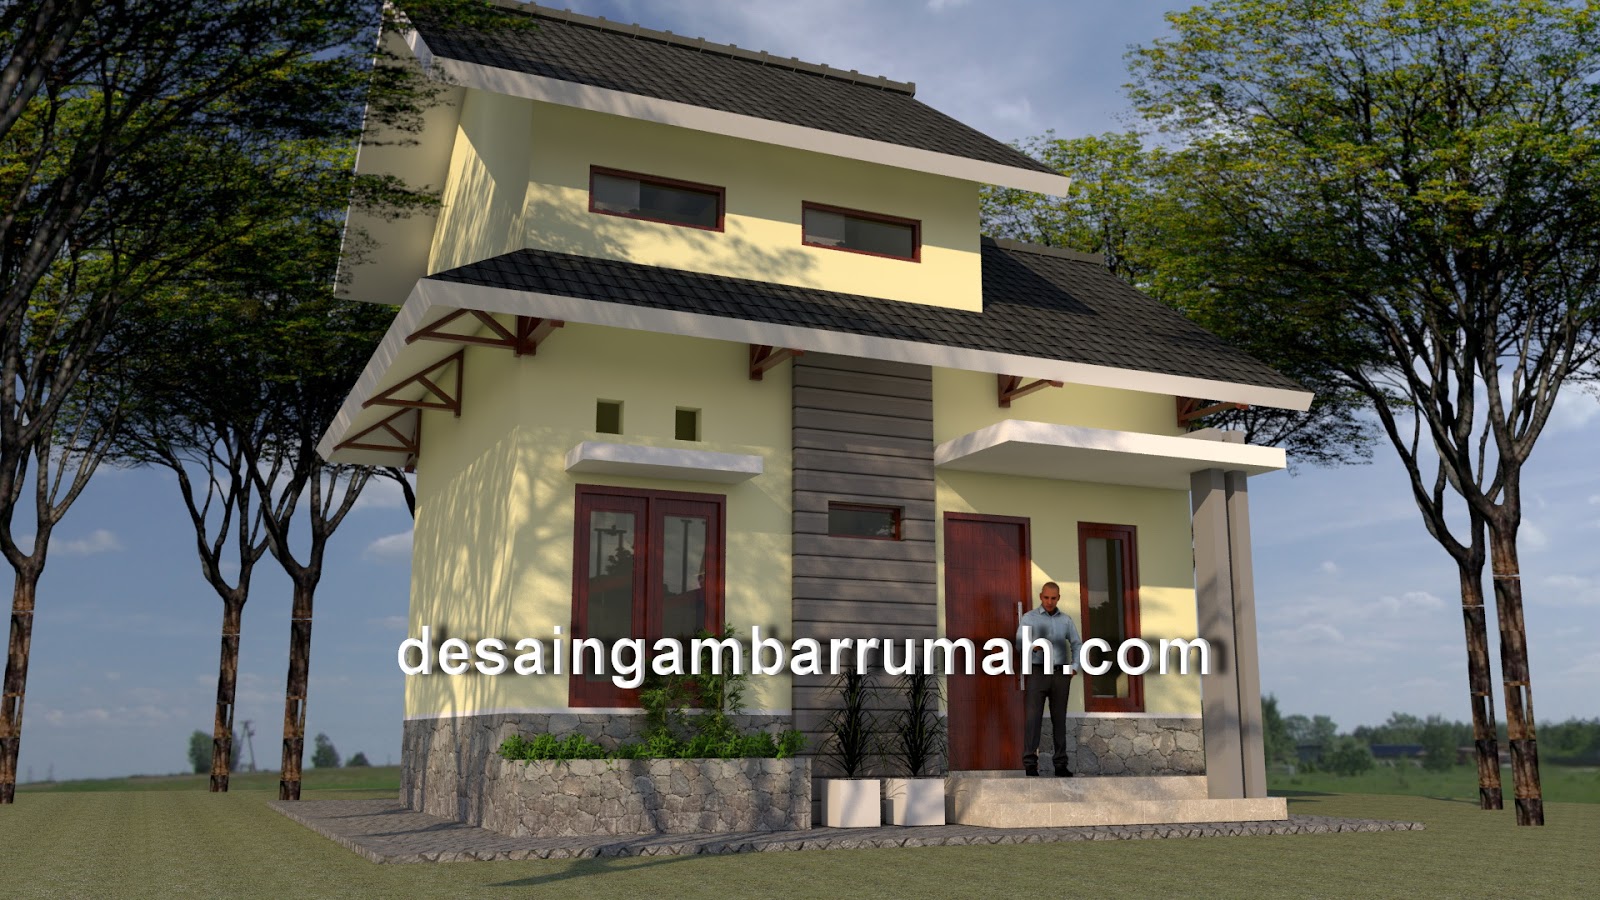 Desain Rumah Mungil 7x5 M Jasa Desain Gambar Rumah Minimalis Online Murah Harga Terjangkau